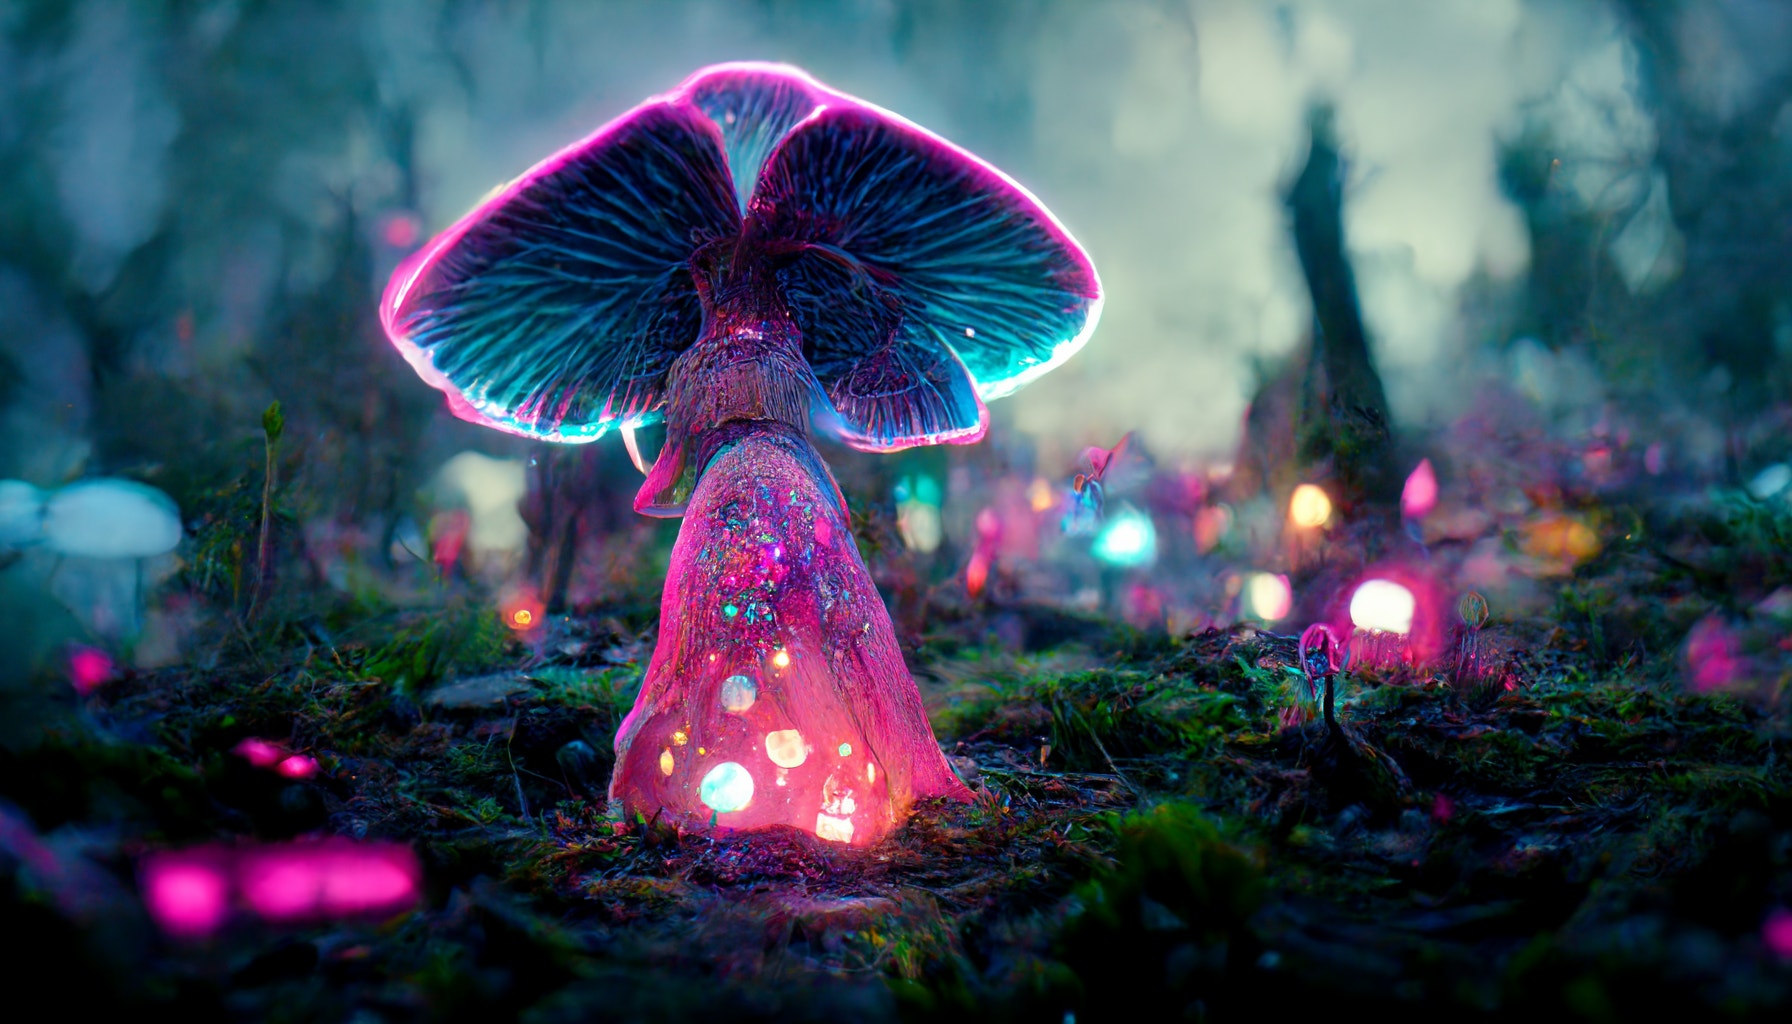 Butterfly mushroom